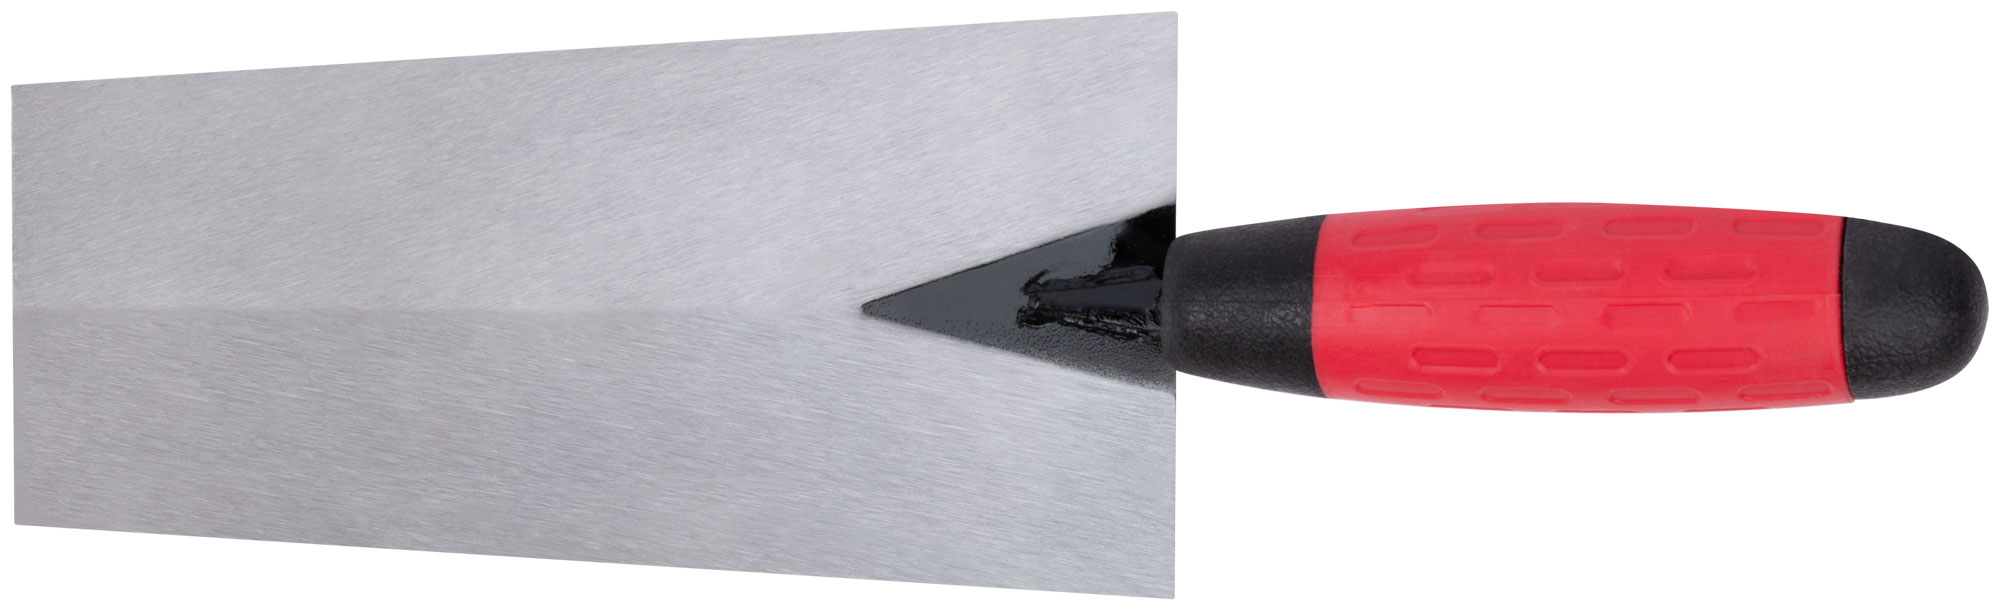 Мастерок каменщика, прорезиненная ручка 180 мм